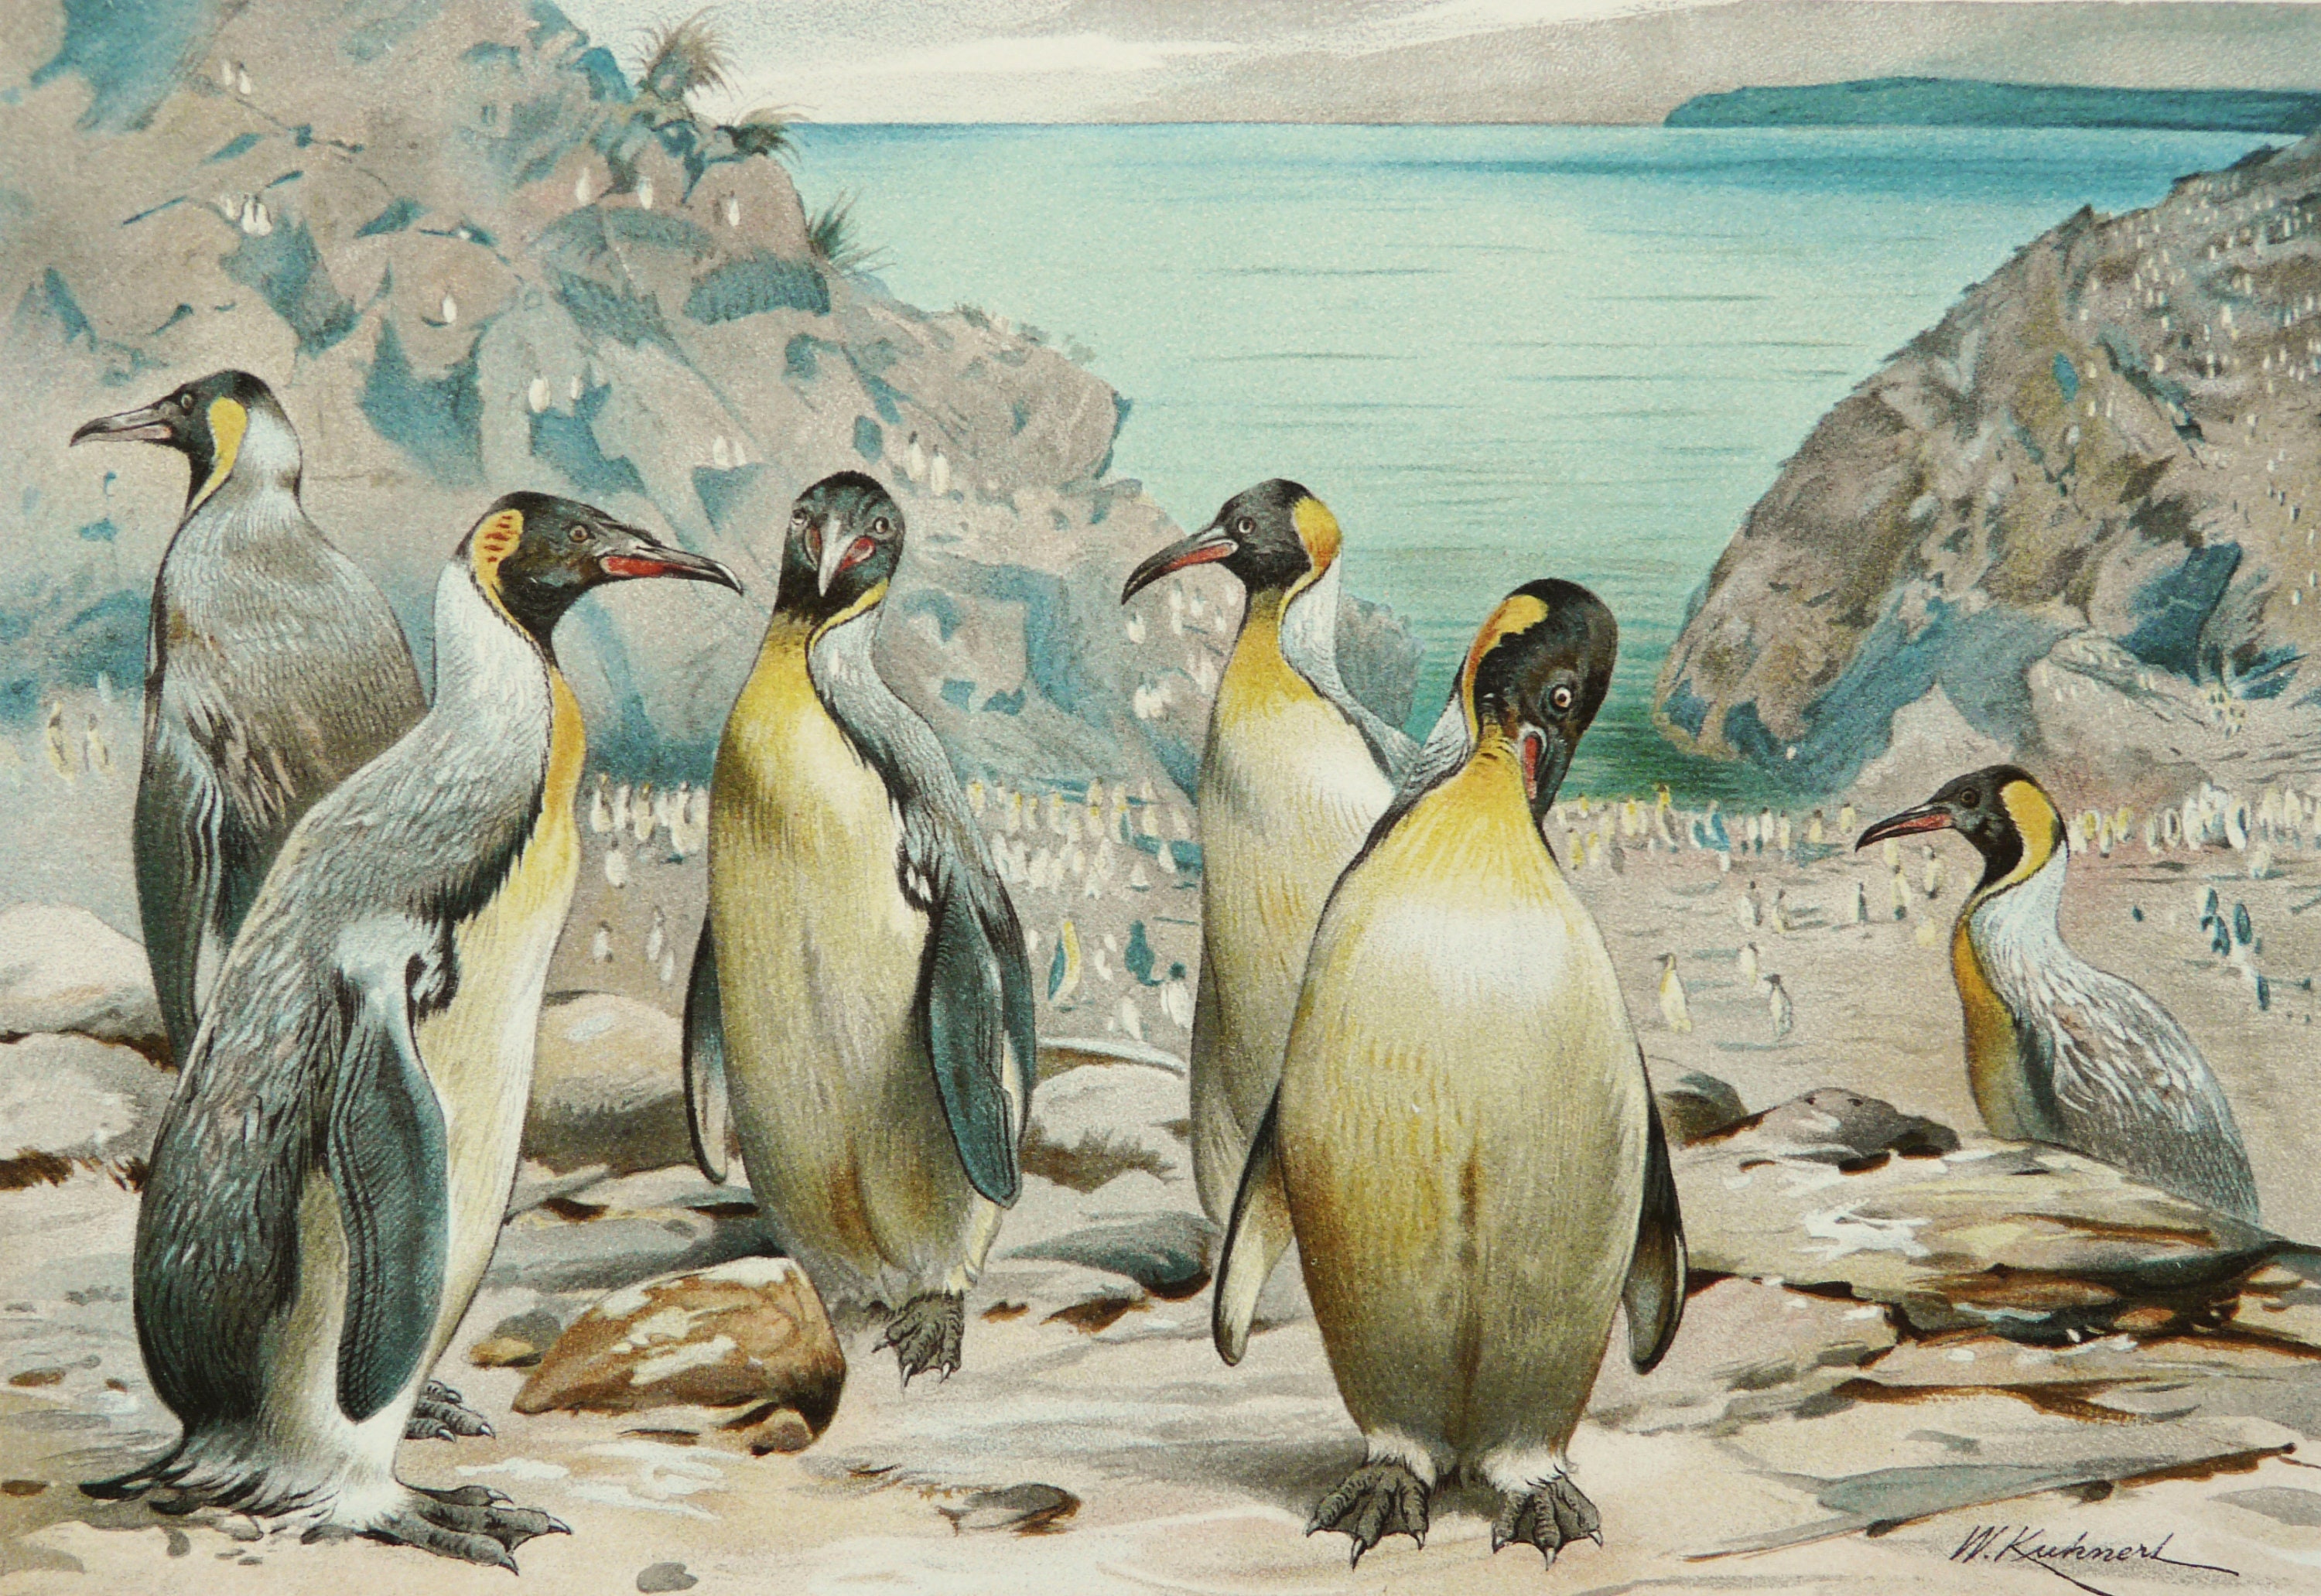 Penguins Engraving Kit